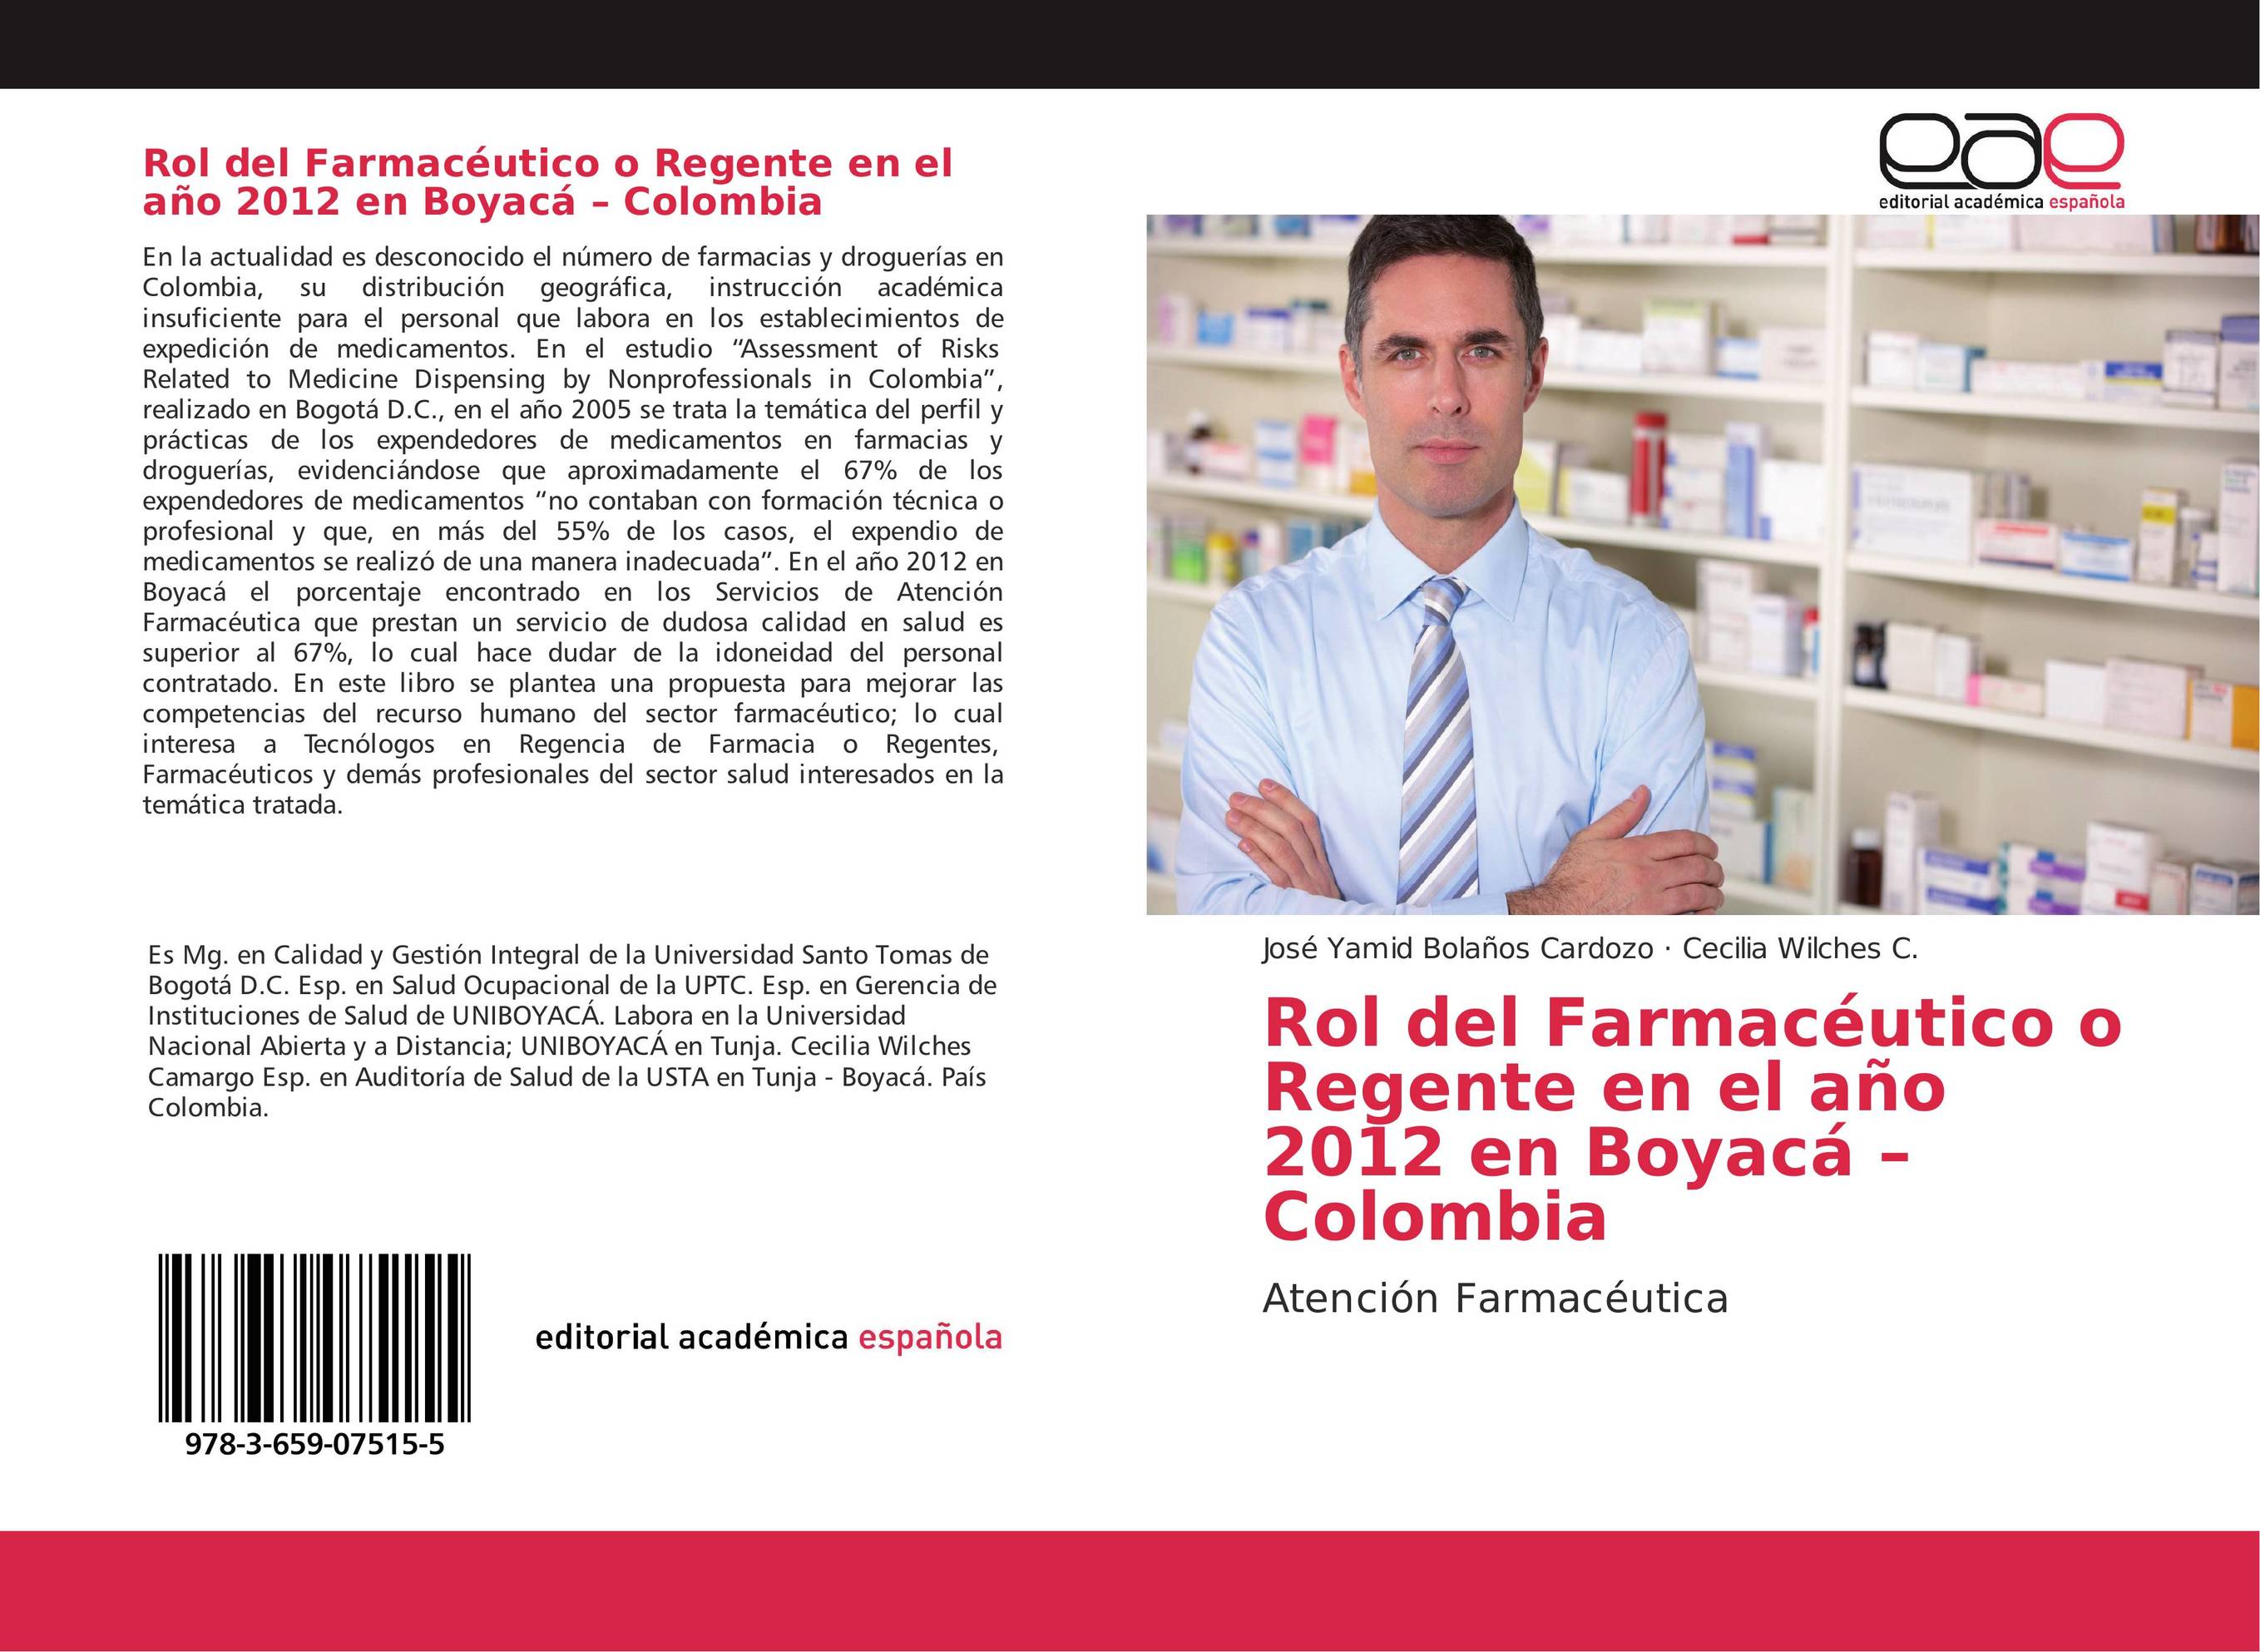 Rol del Farmacéutico o Regente en el año 2012 en Boyacá - Colombia